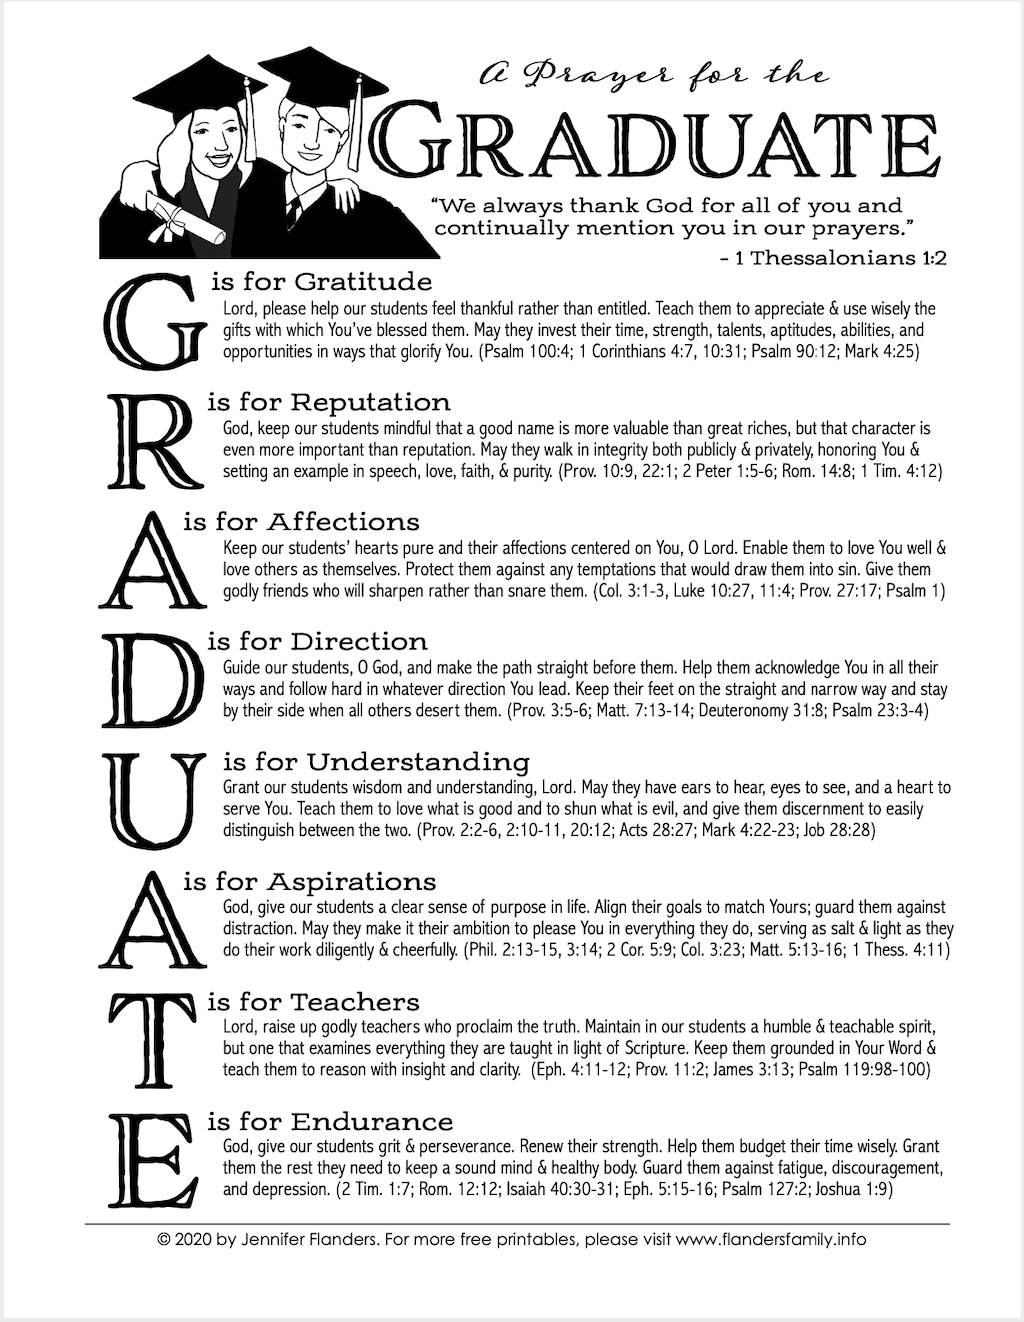 A Prayer for the Graduate